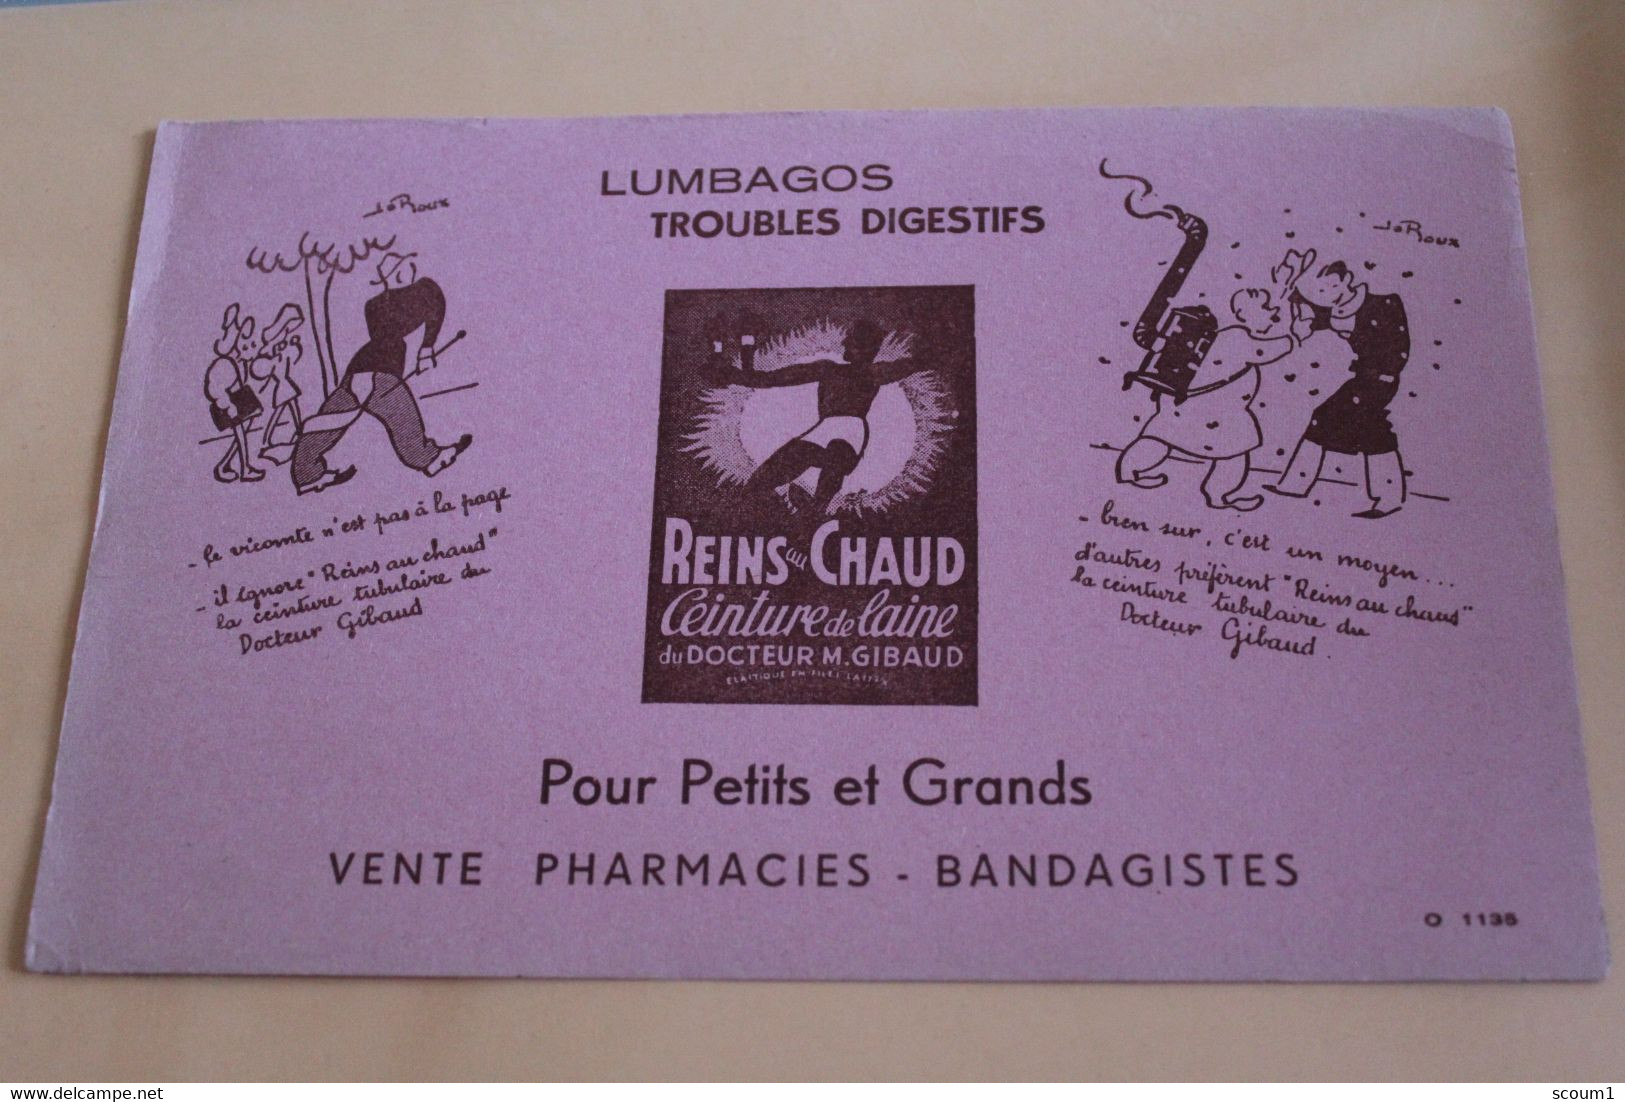 Reins Chaud - Lumbgos - Trouble Digestif - Produits Pharmaceutiques